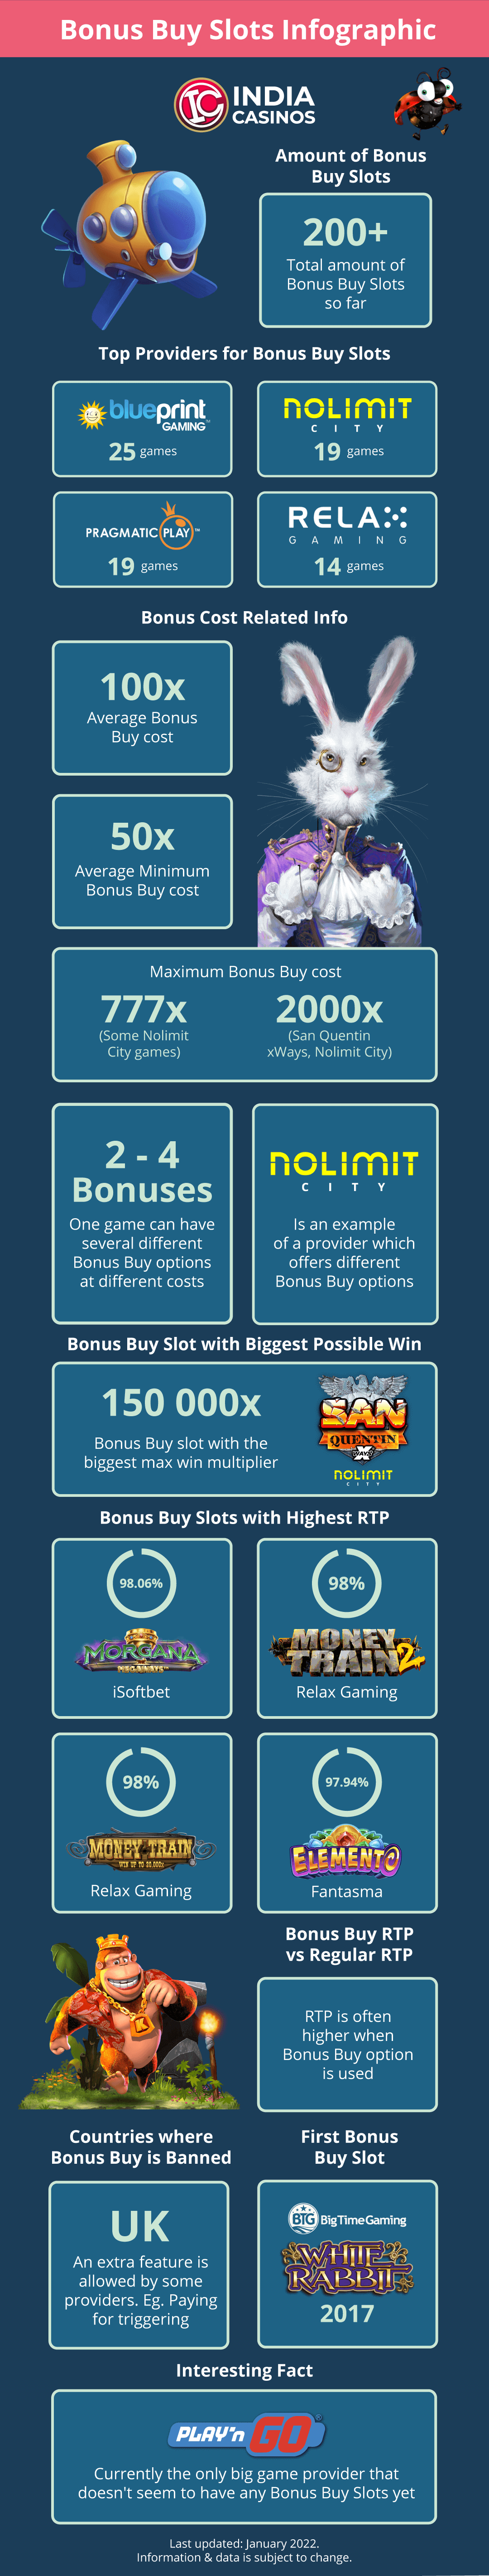 Bonus Buy Infographic 